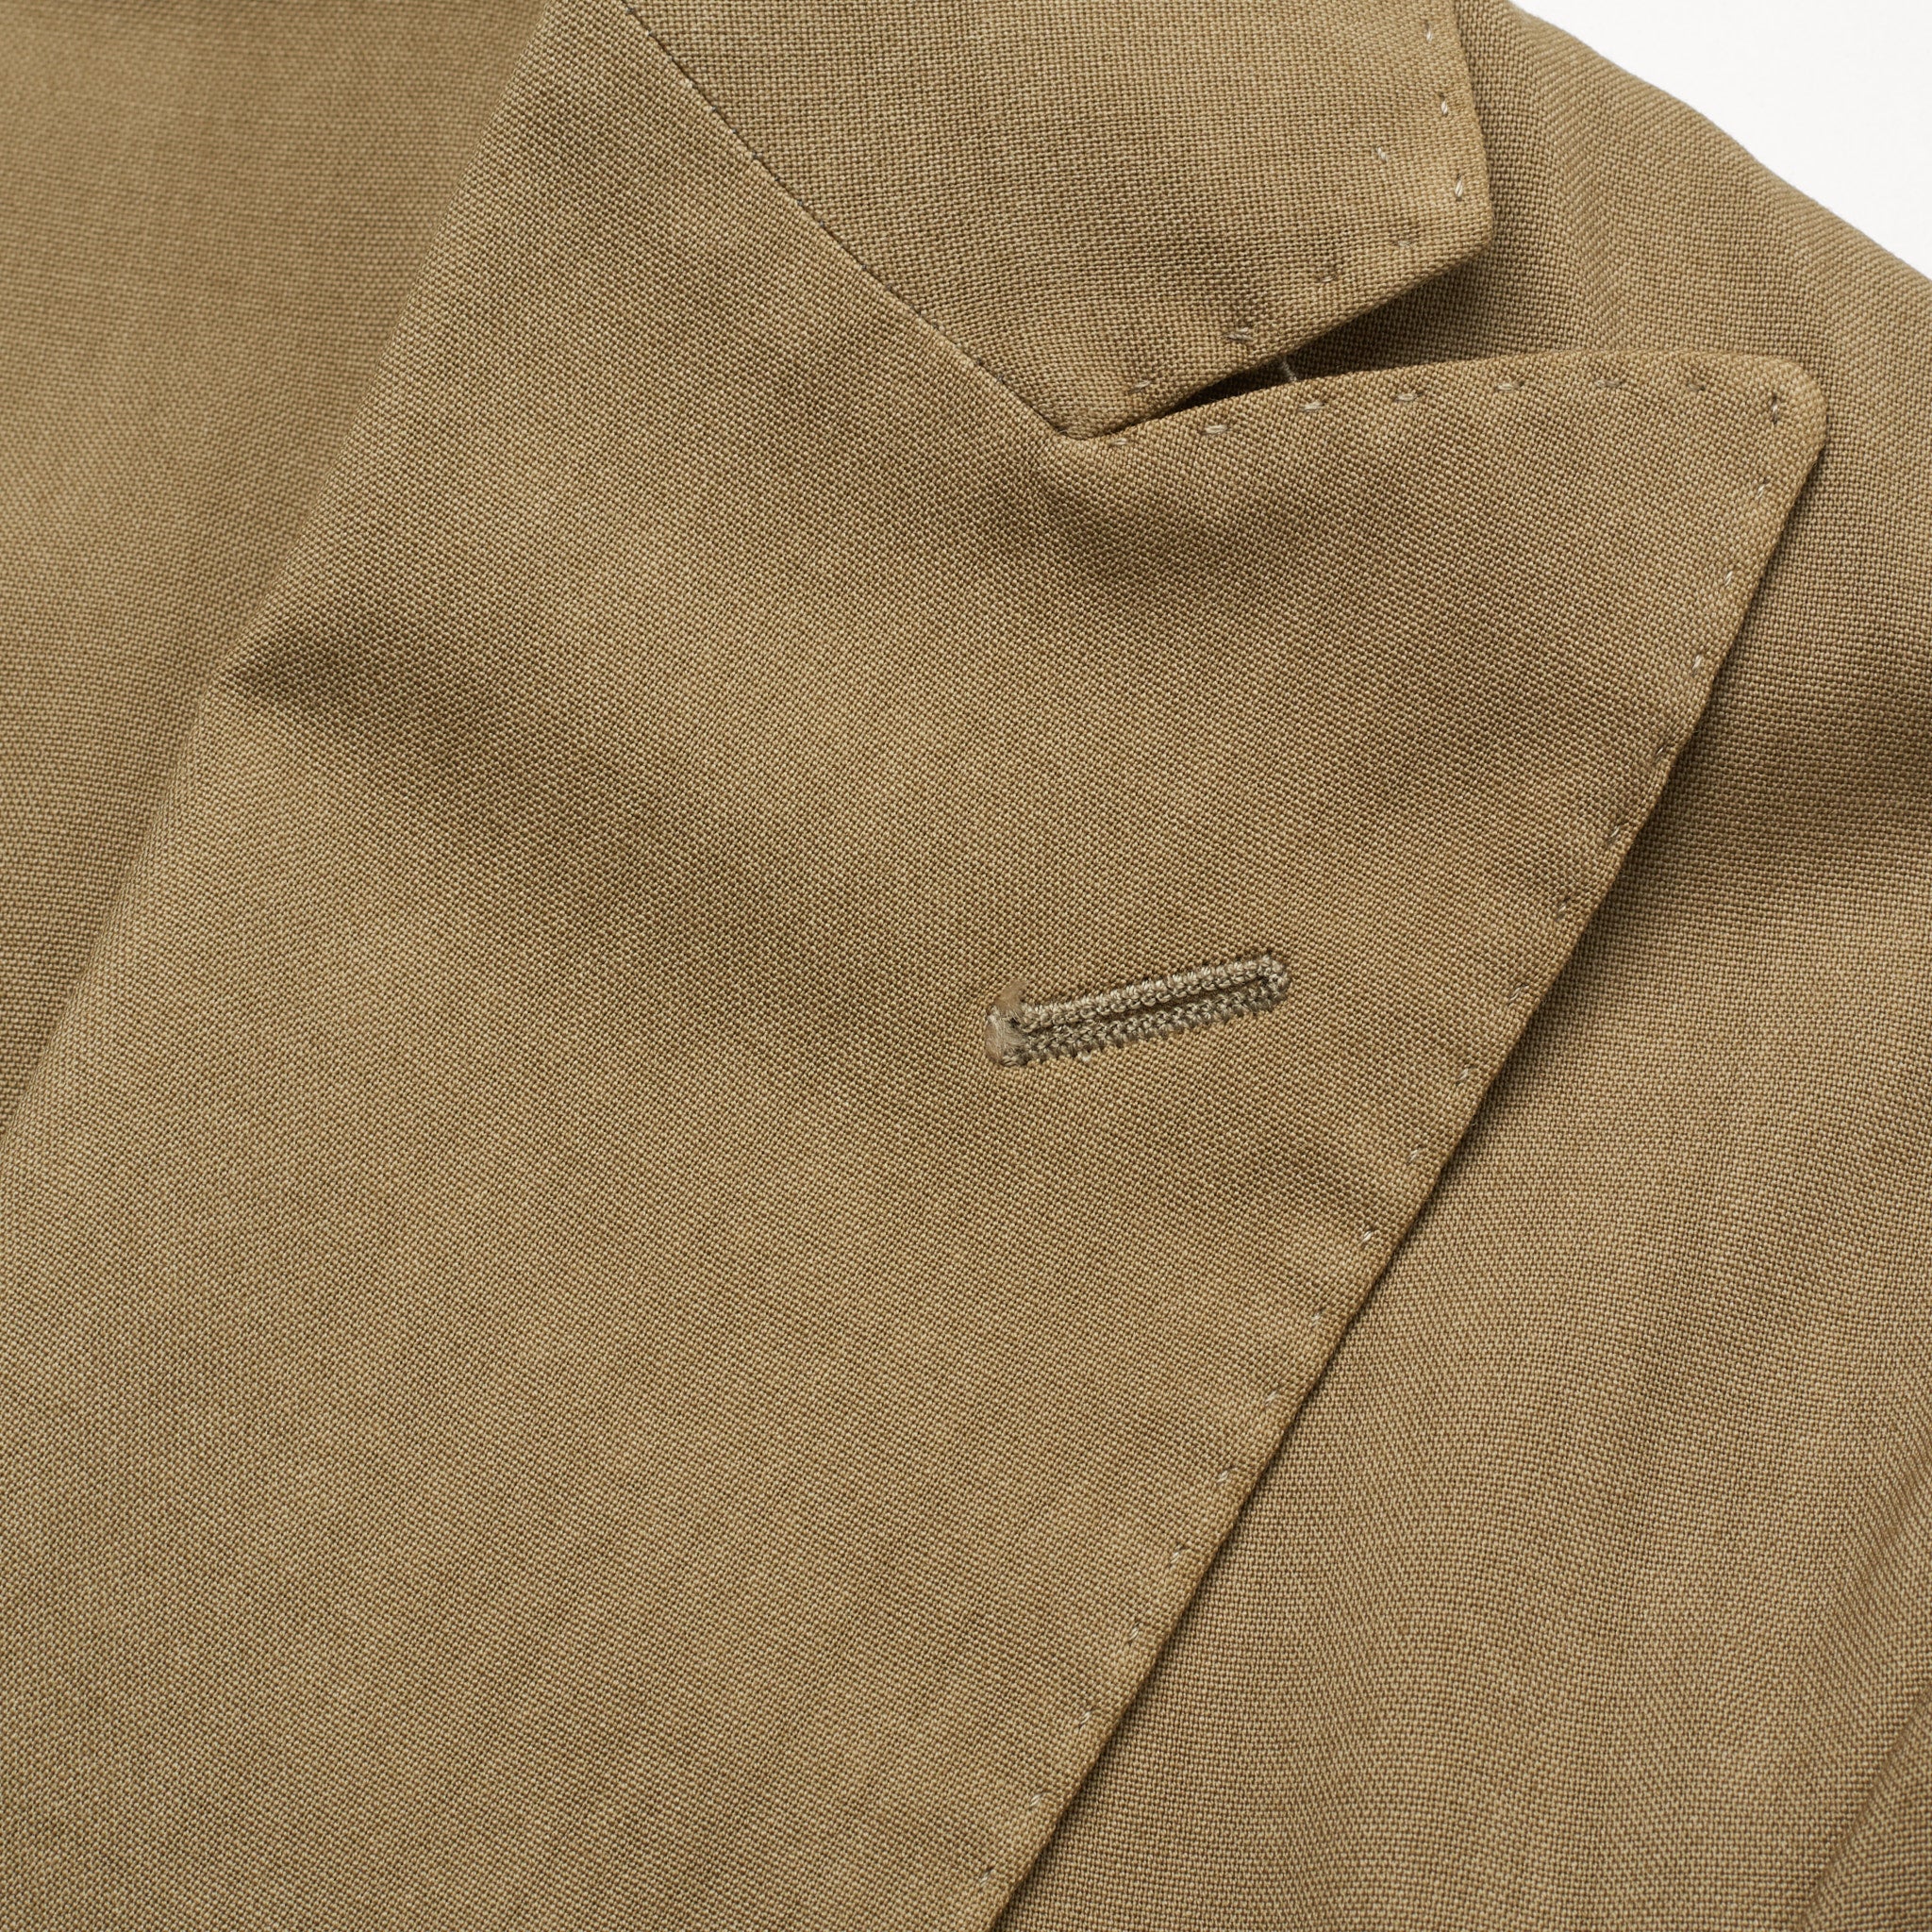 BOGLIOLI "K. Jacket" Olive Virgin Wool Unlined Peak Lapel Jacket EU 48 NEW US 38 BOGLIOLI